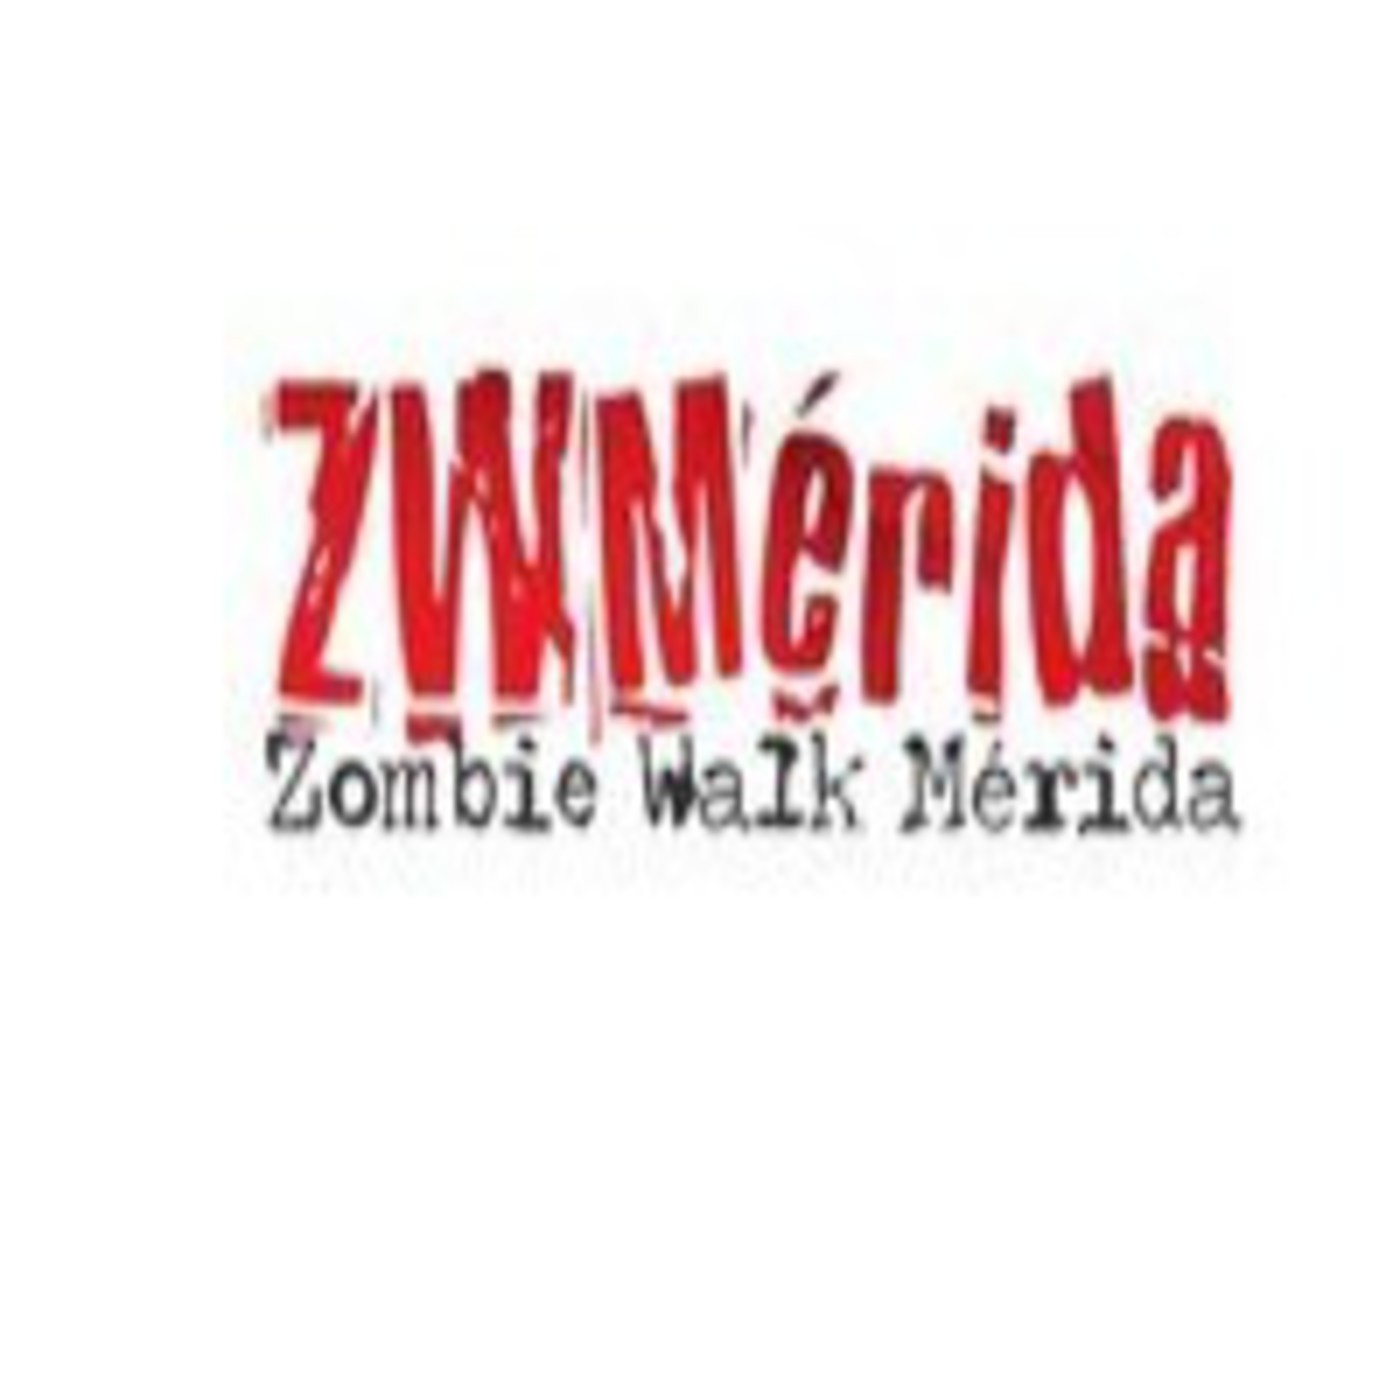 El Show del Cementerio Programa 82 Temporada 5 "Zombie Walk Mérida 2014"